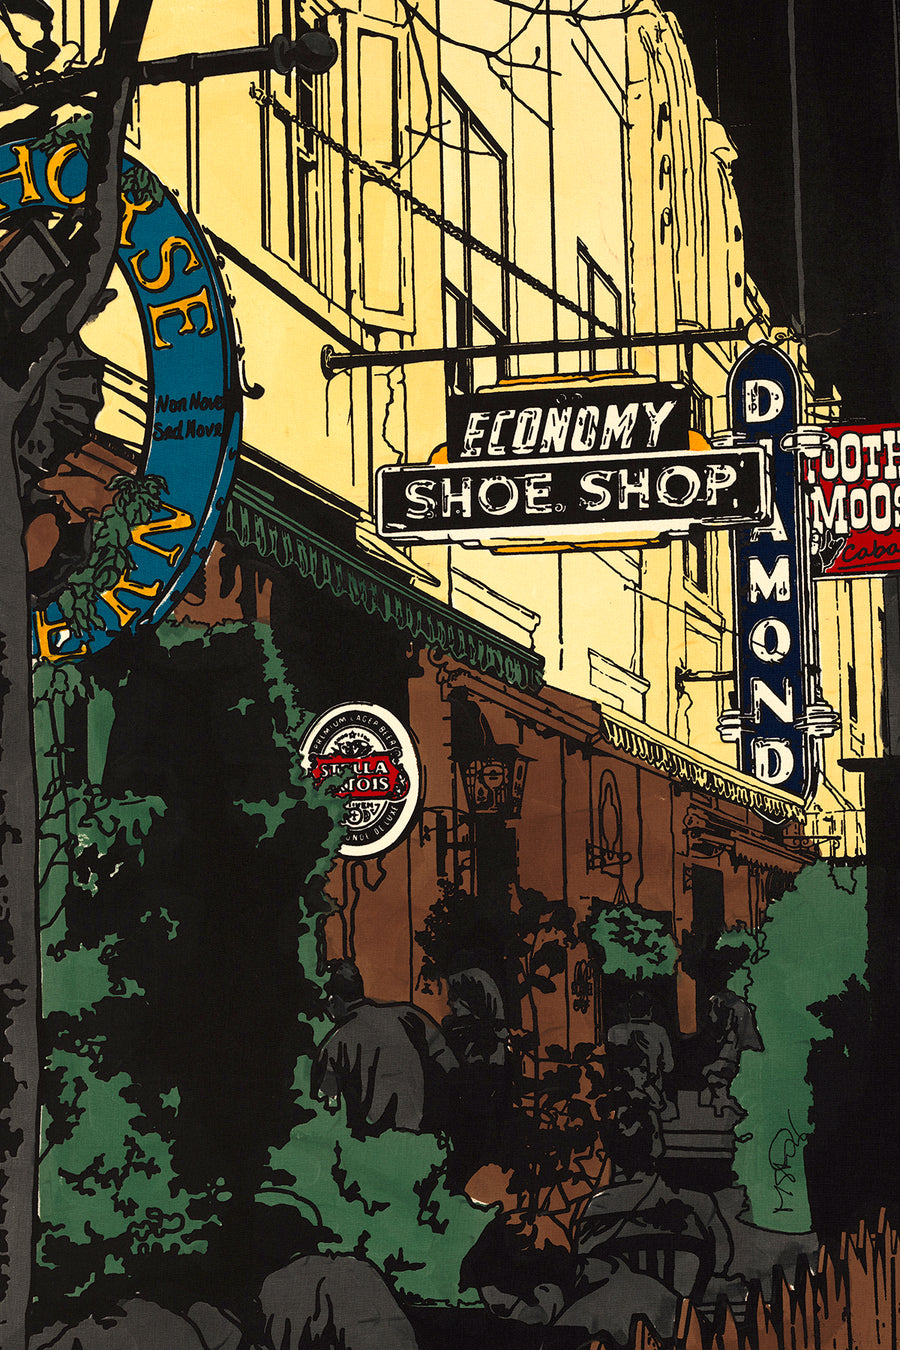 The Shoe Shop on Argyle St. A screen print by artist Michelle SaintOnge.